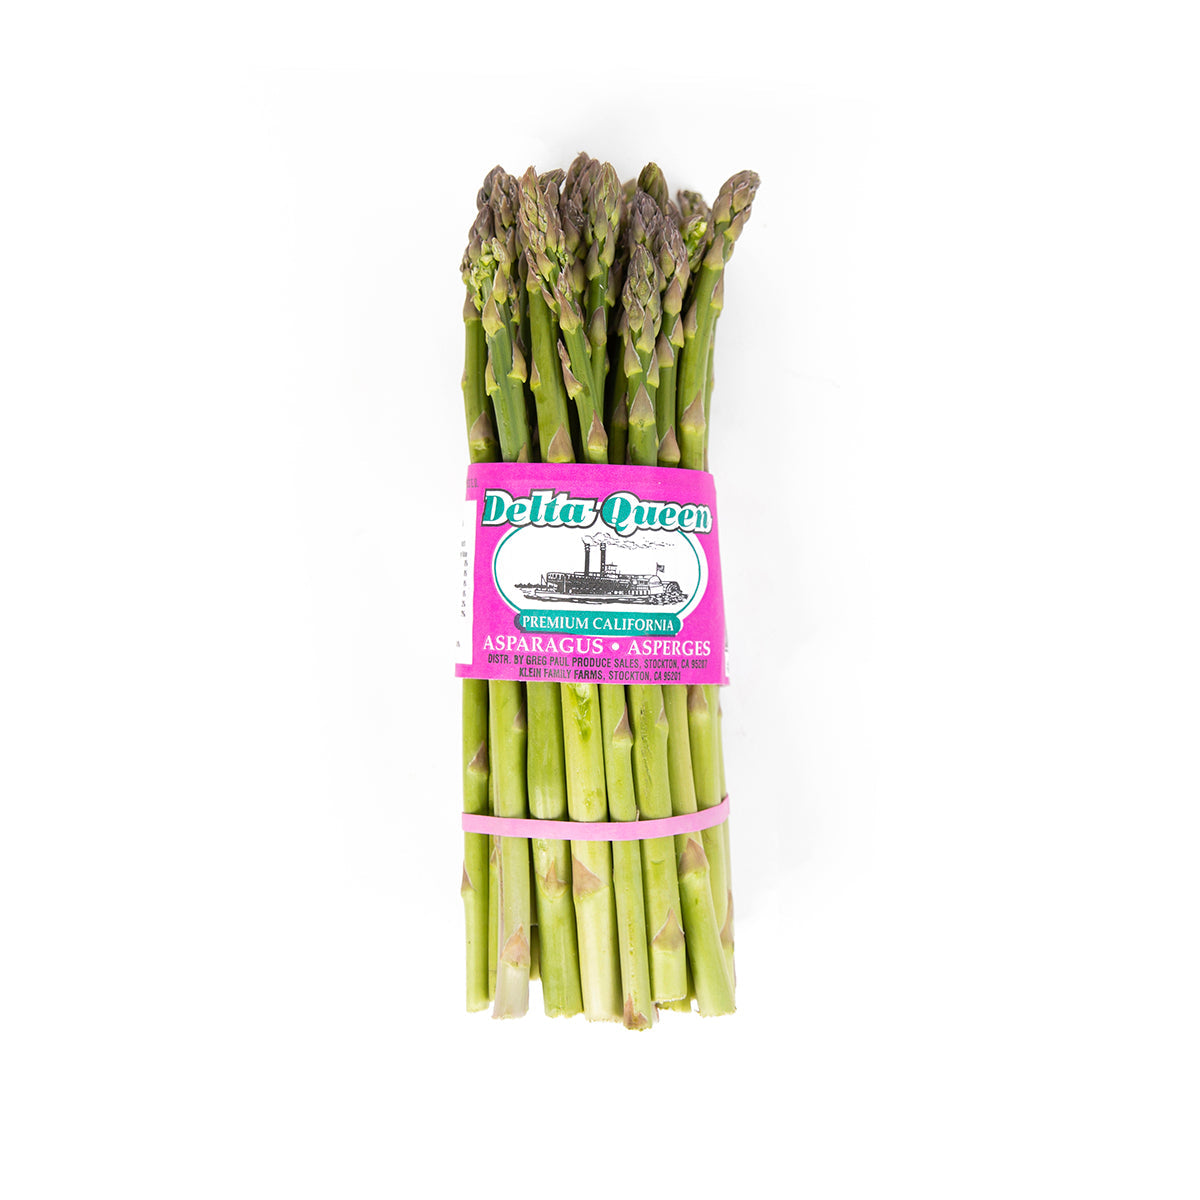 Delta Queen California Premium Standard Asparagus 11 lb